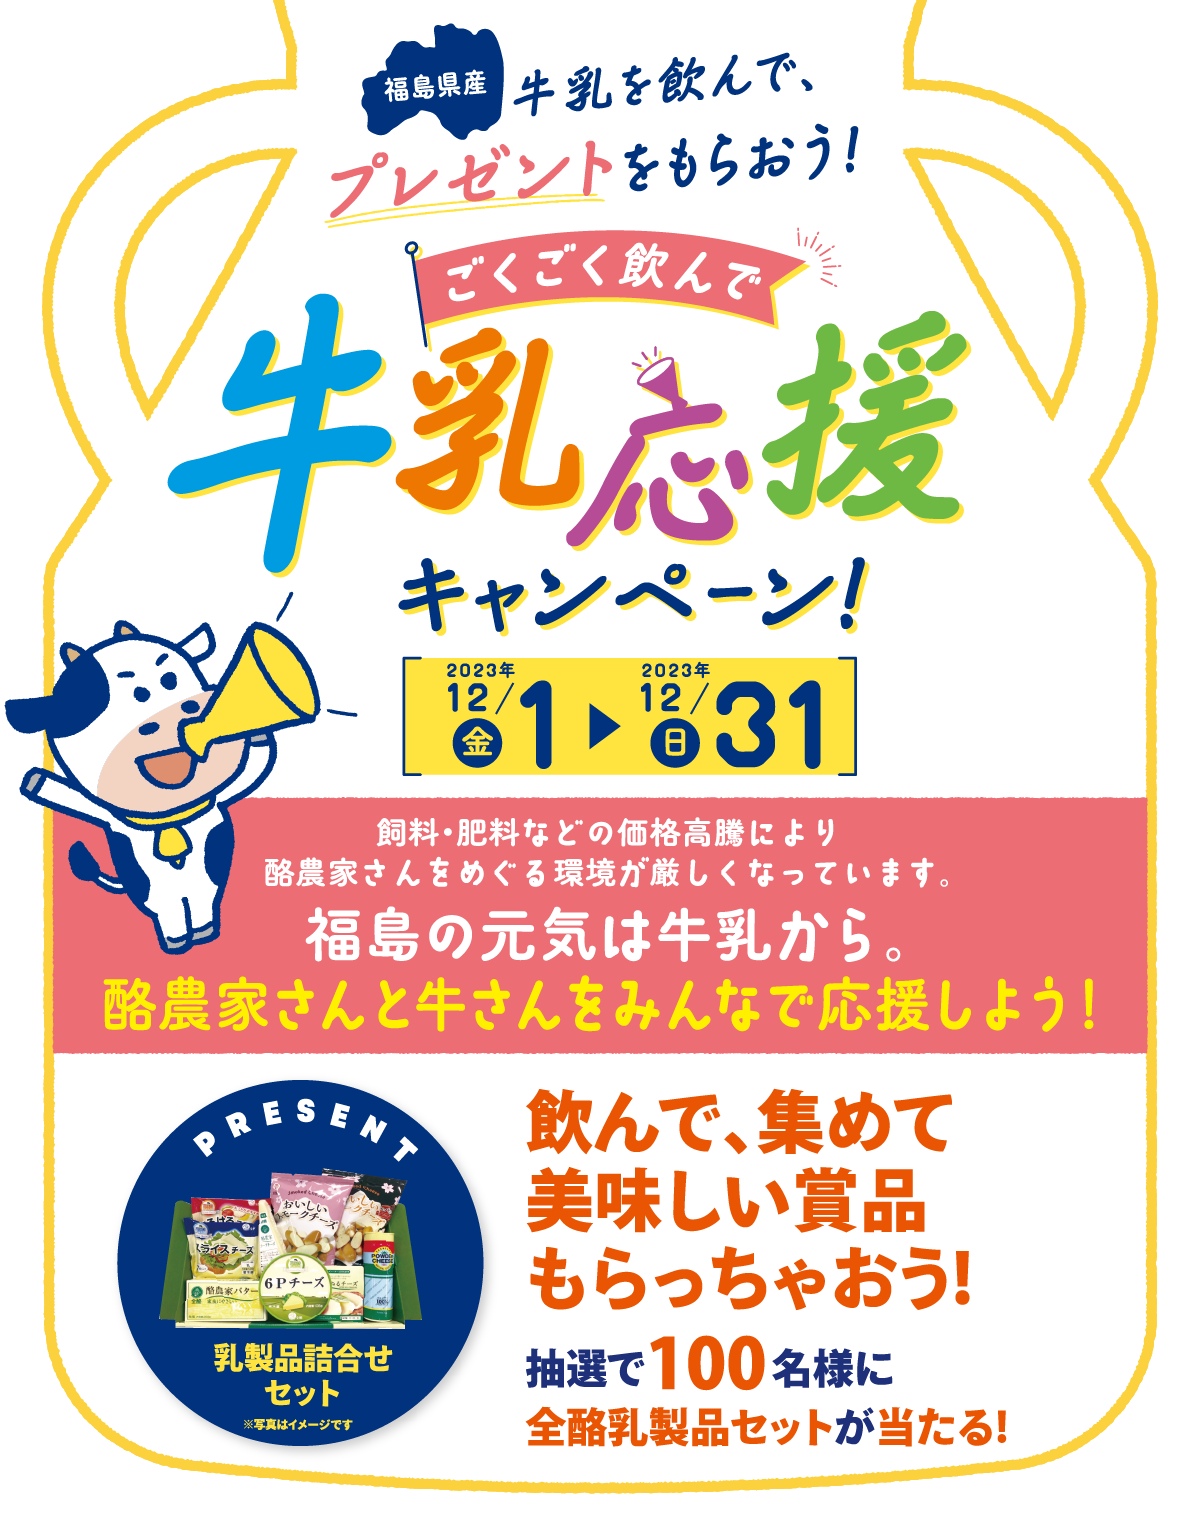 福島県産 牛乳応援キャンペーン